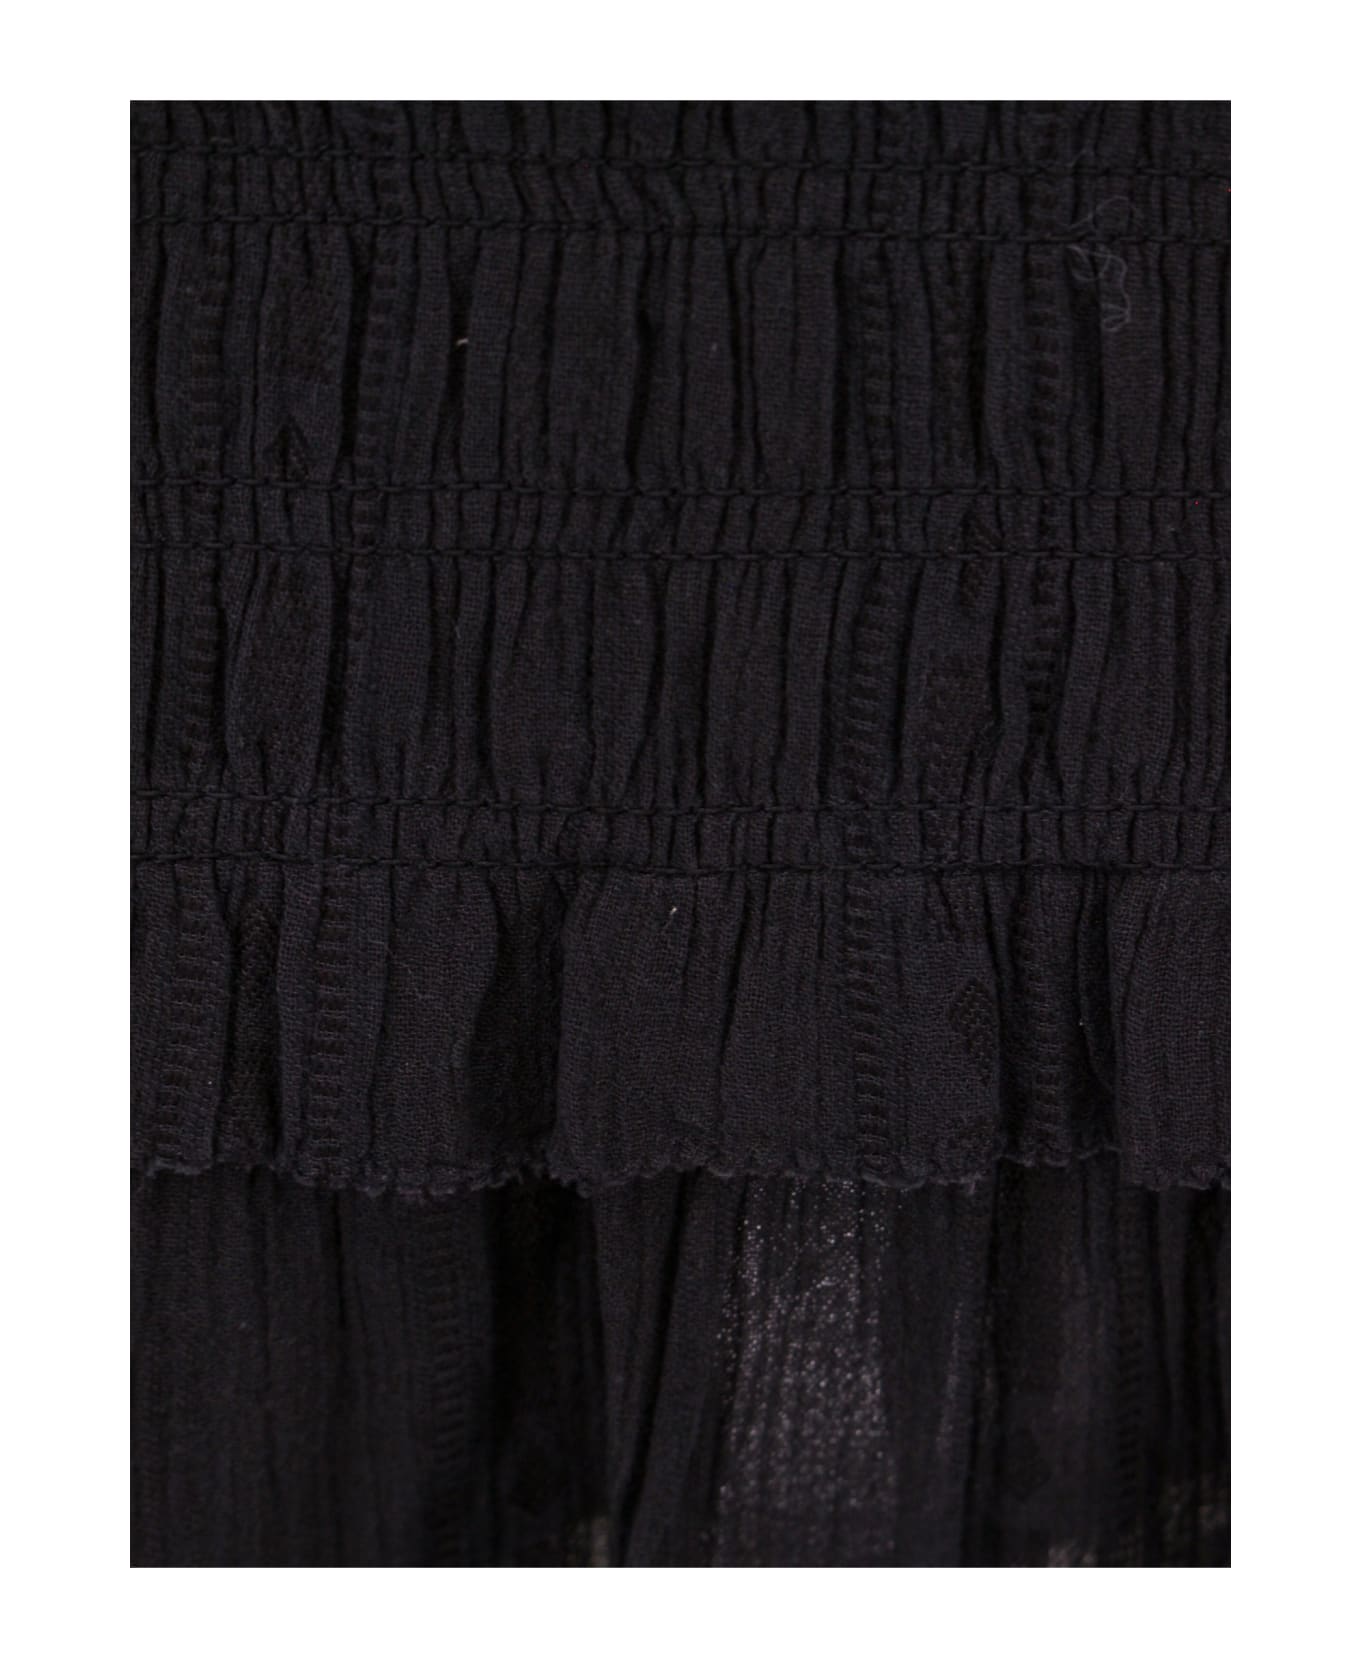 Marant Étoile Dorela Skirt - BLACK